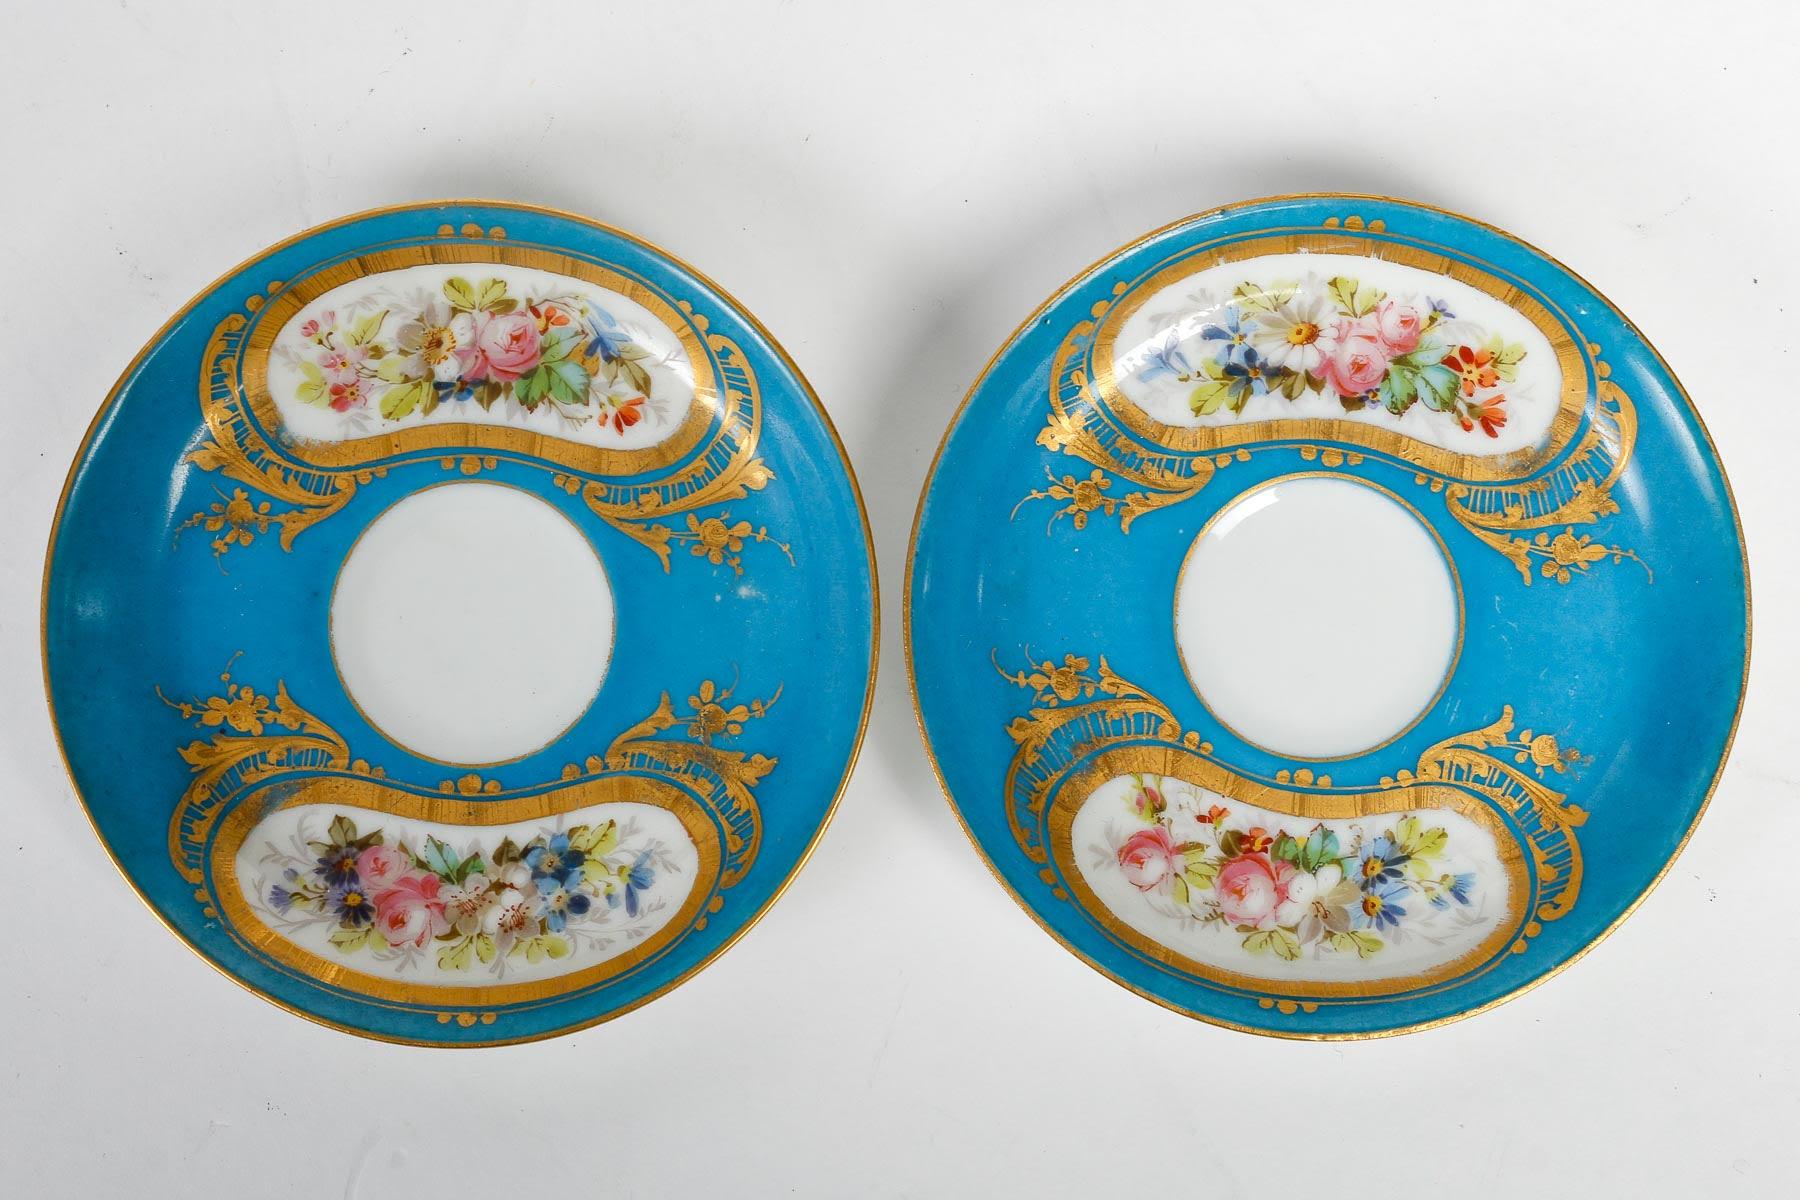 Tête-à-tête, Tea Service, Sèvres Porcelain, Napoleon III Period. For Sale 6